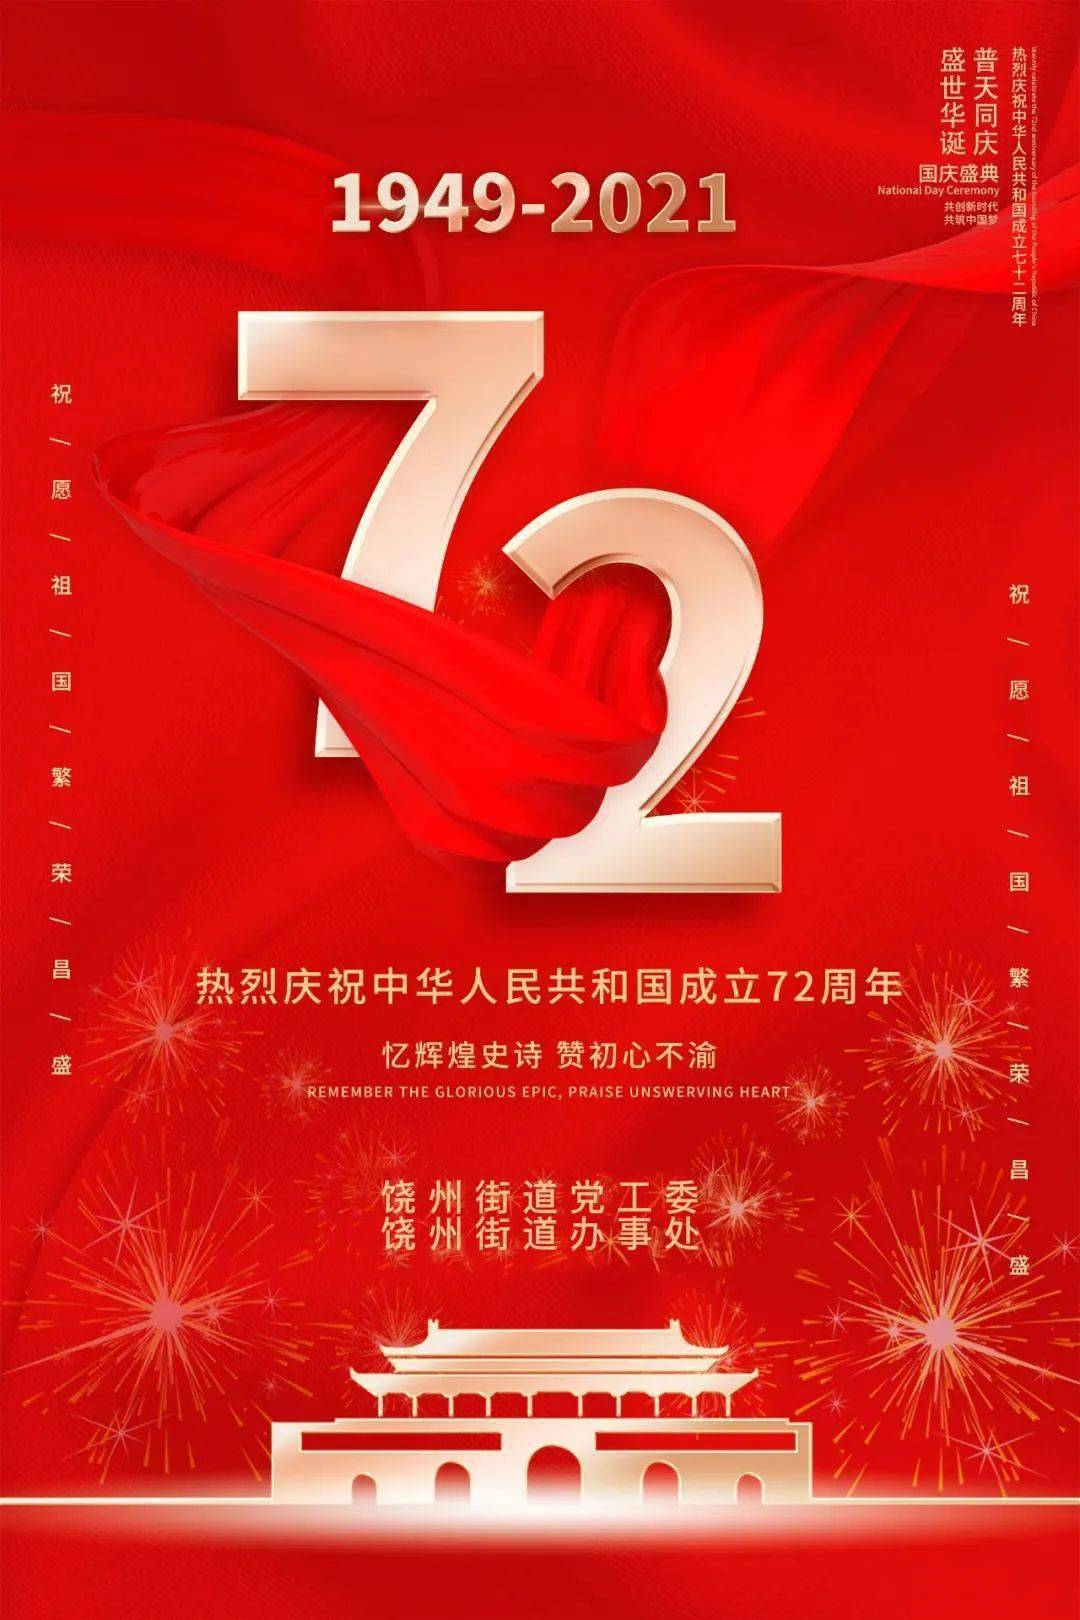 盛世华诞 举国同庆 热烈庆祝中华人民共和国成立72周年